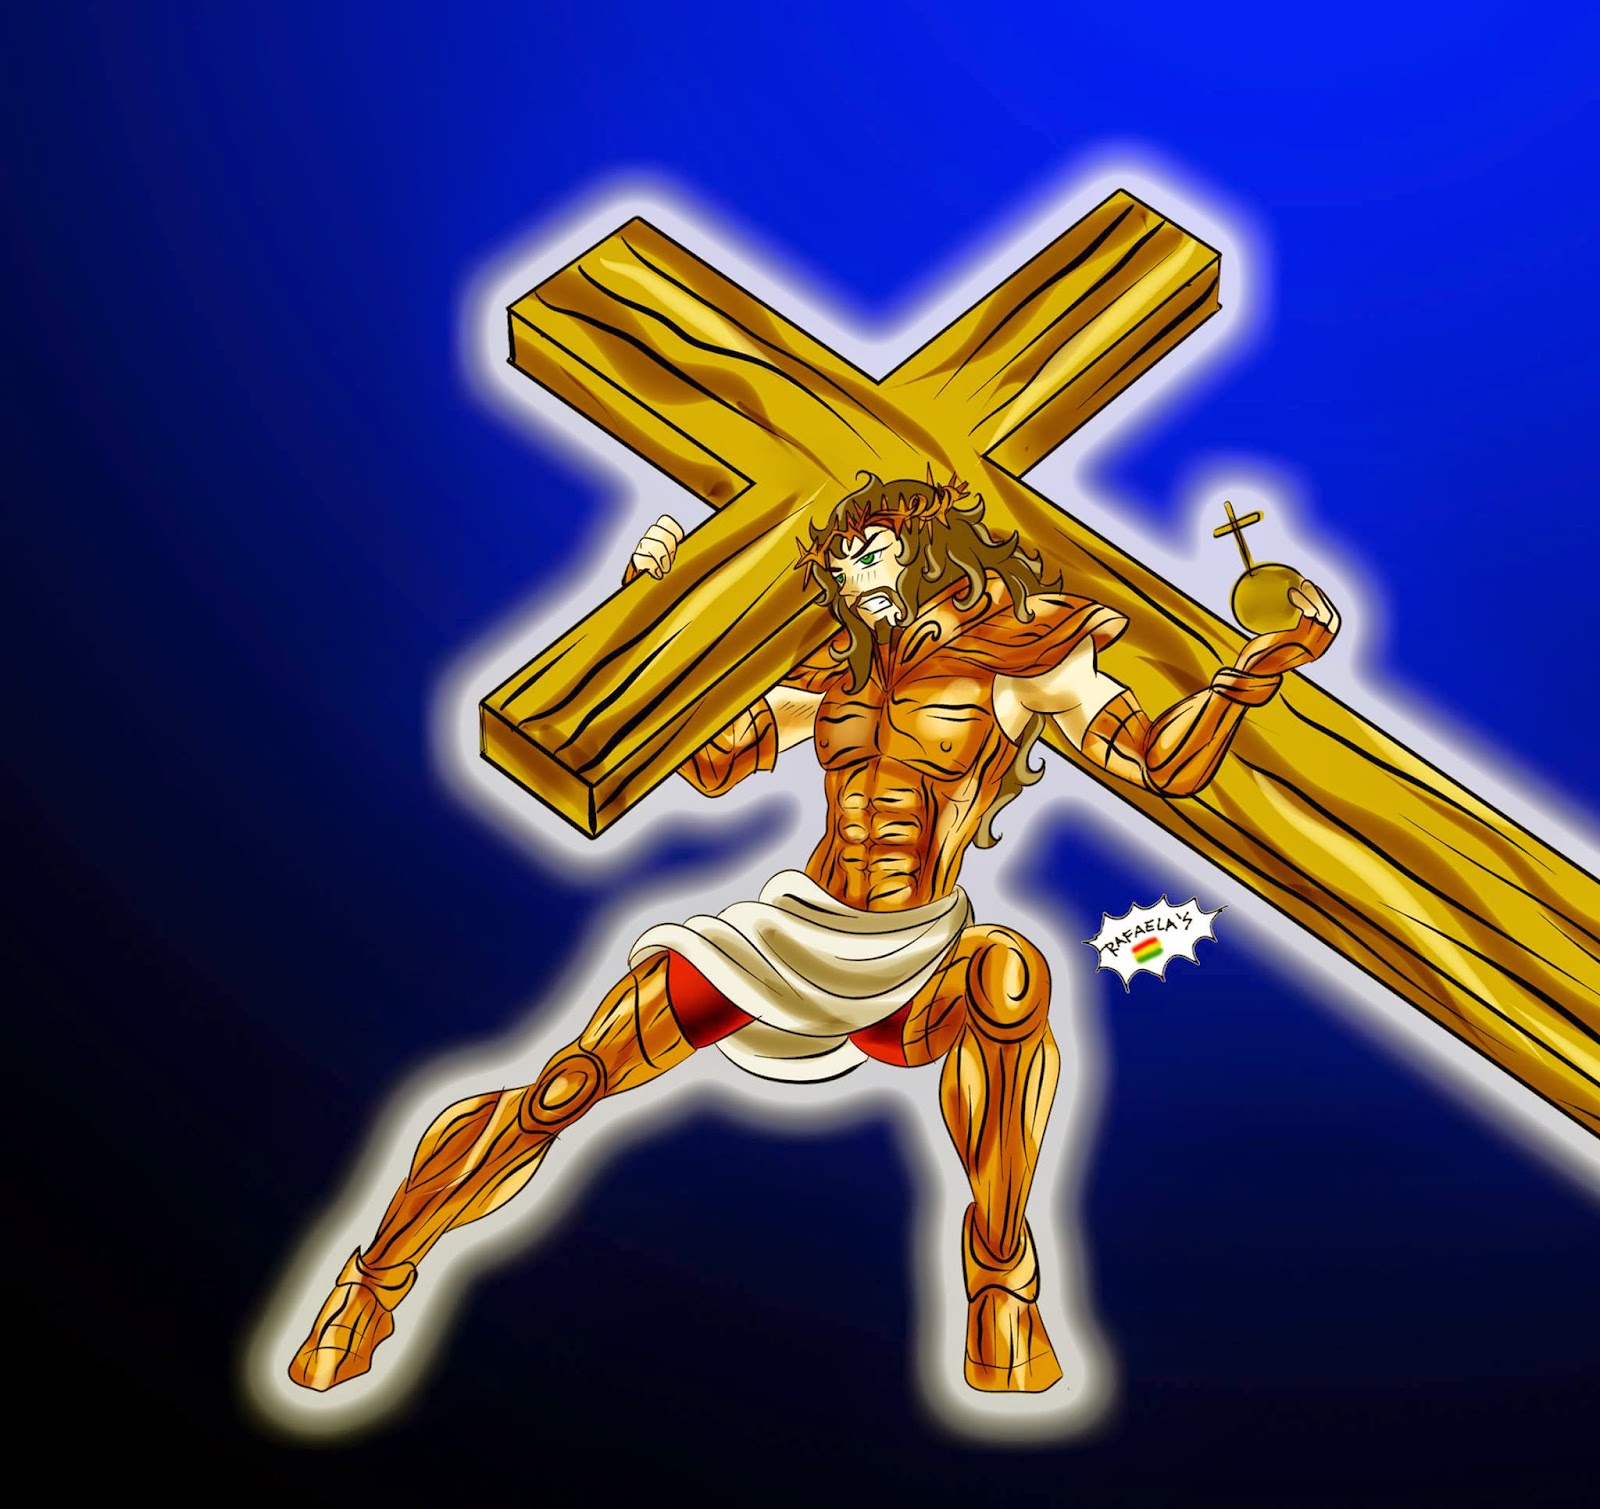 Cristo de bronce leyenda - Cochabandido especial